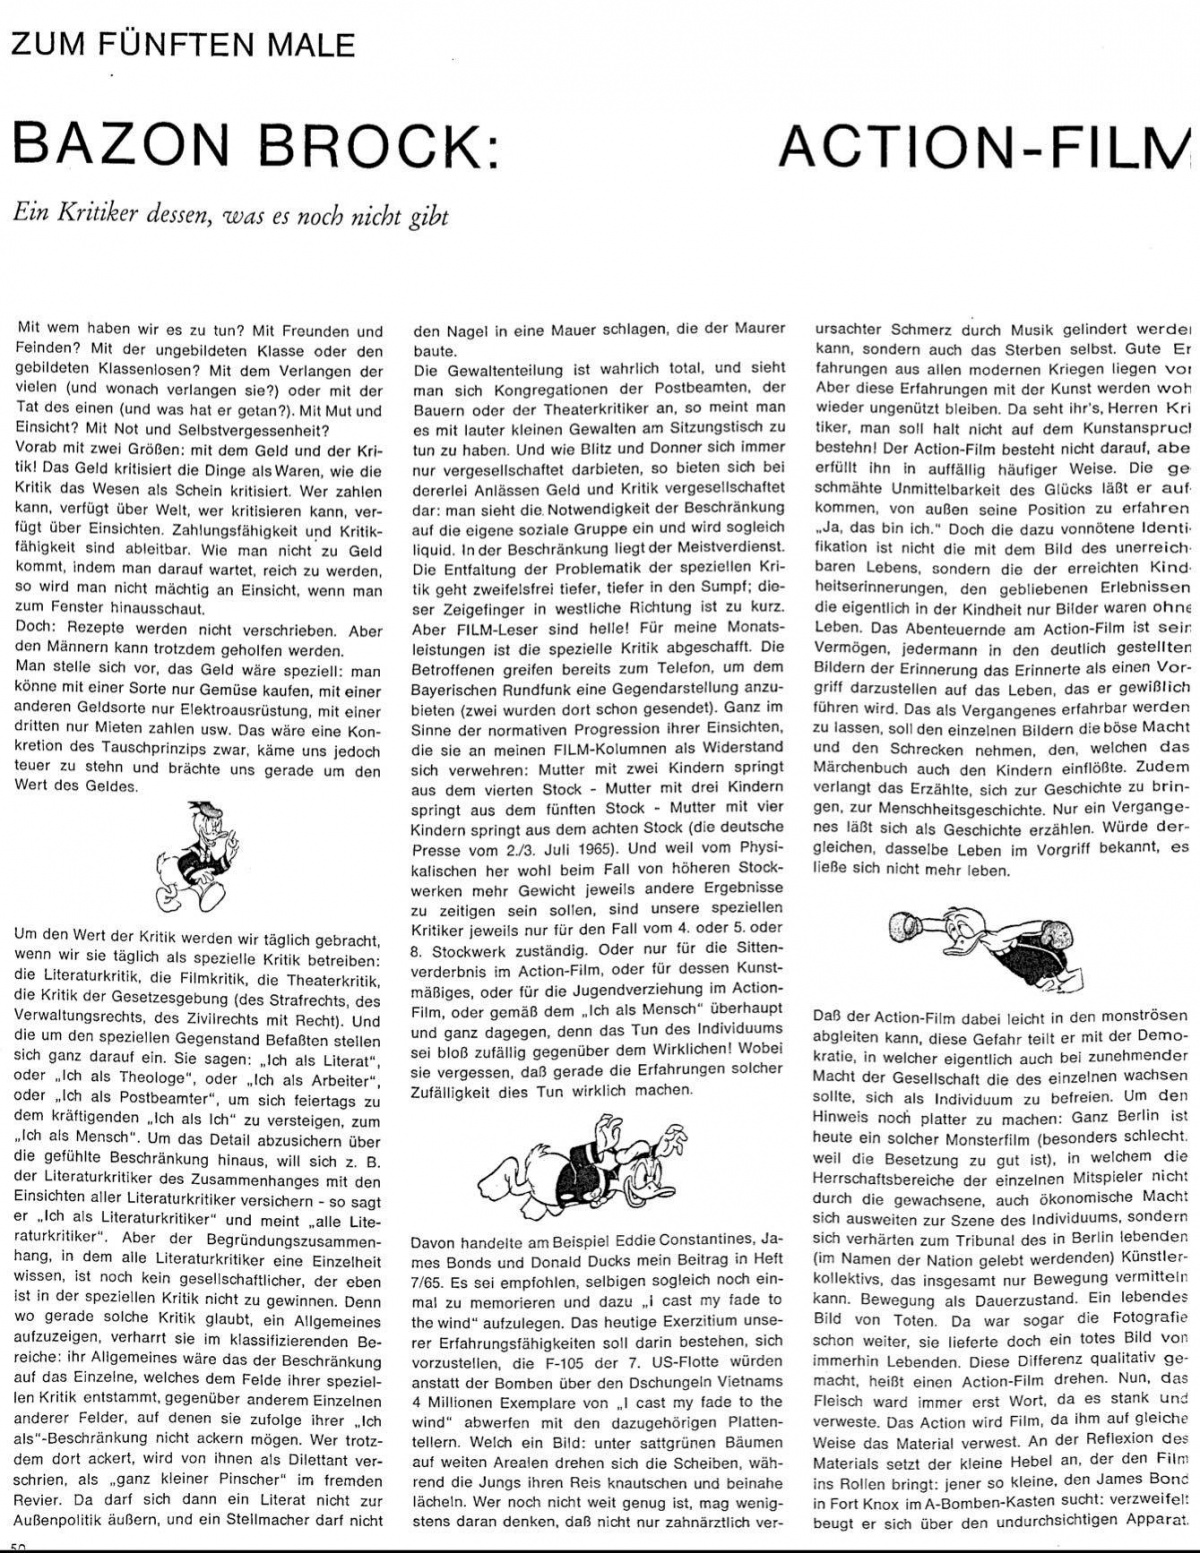 Film Zeitschrift 8/65 Text S.50